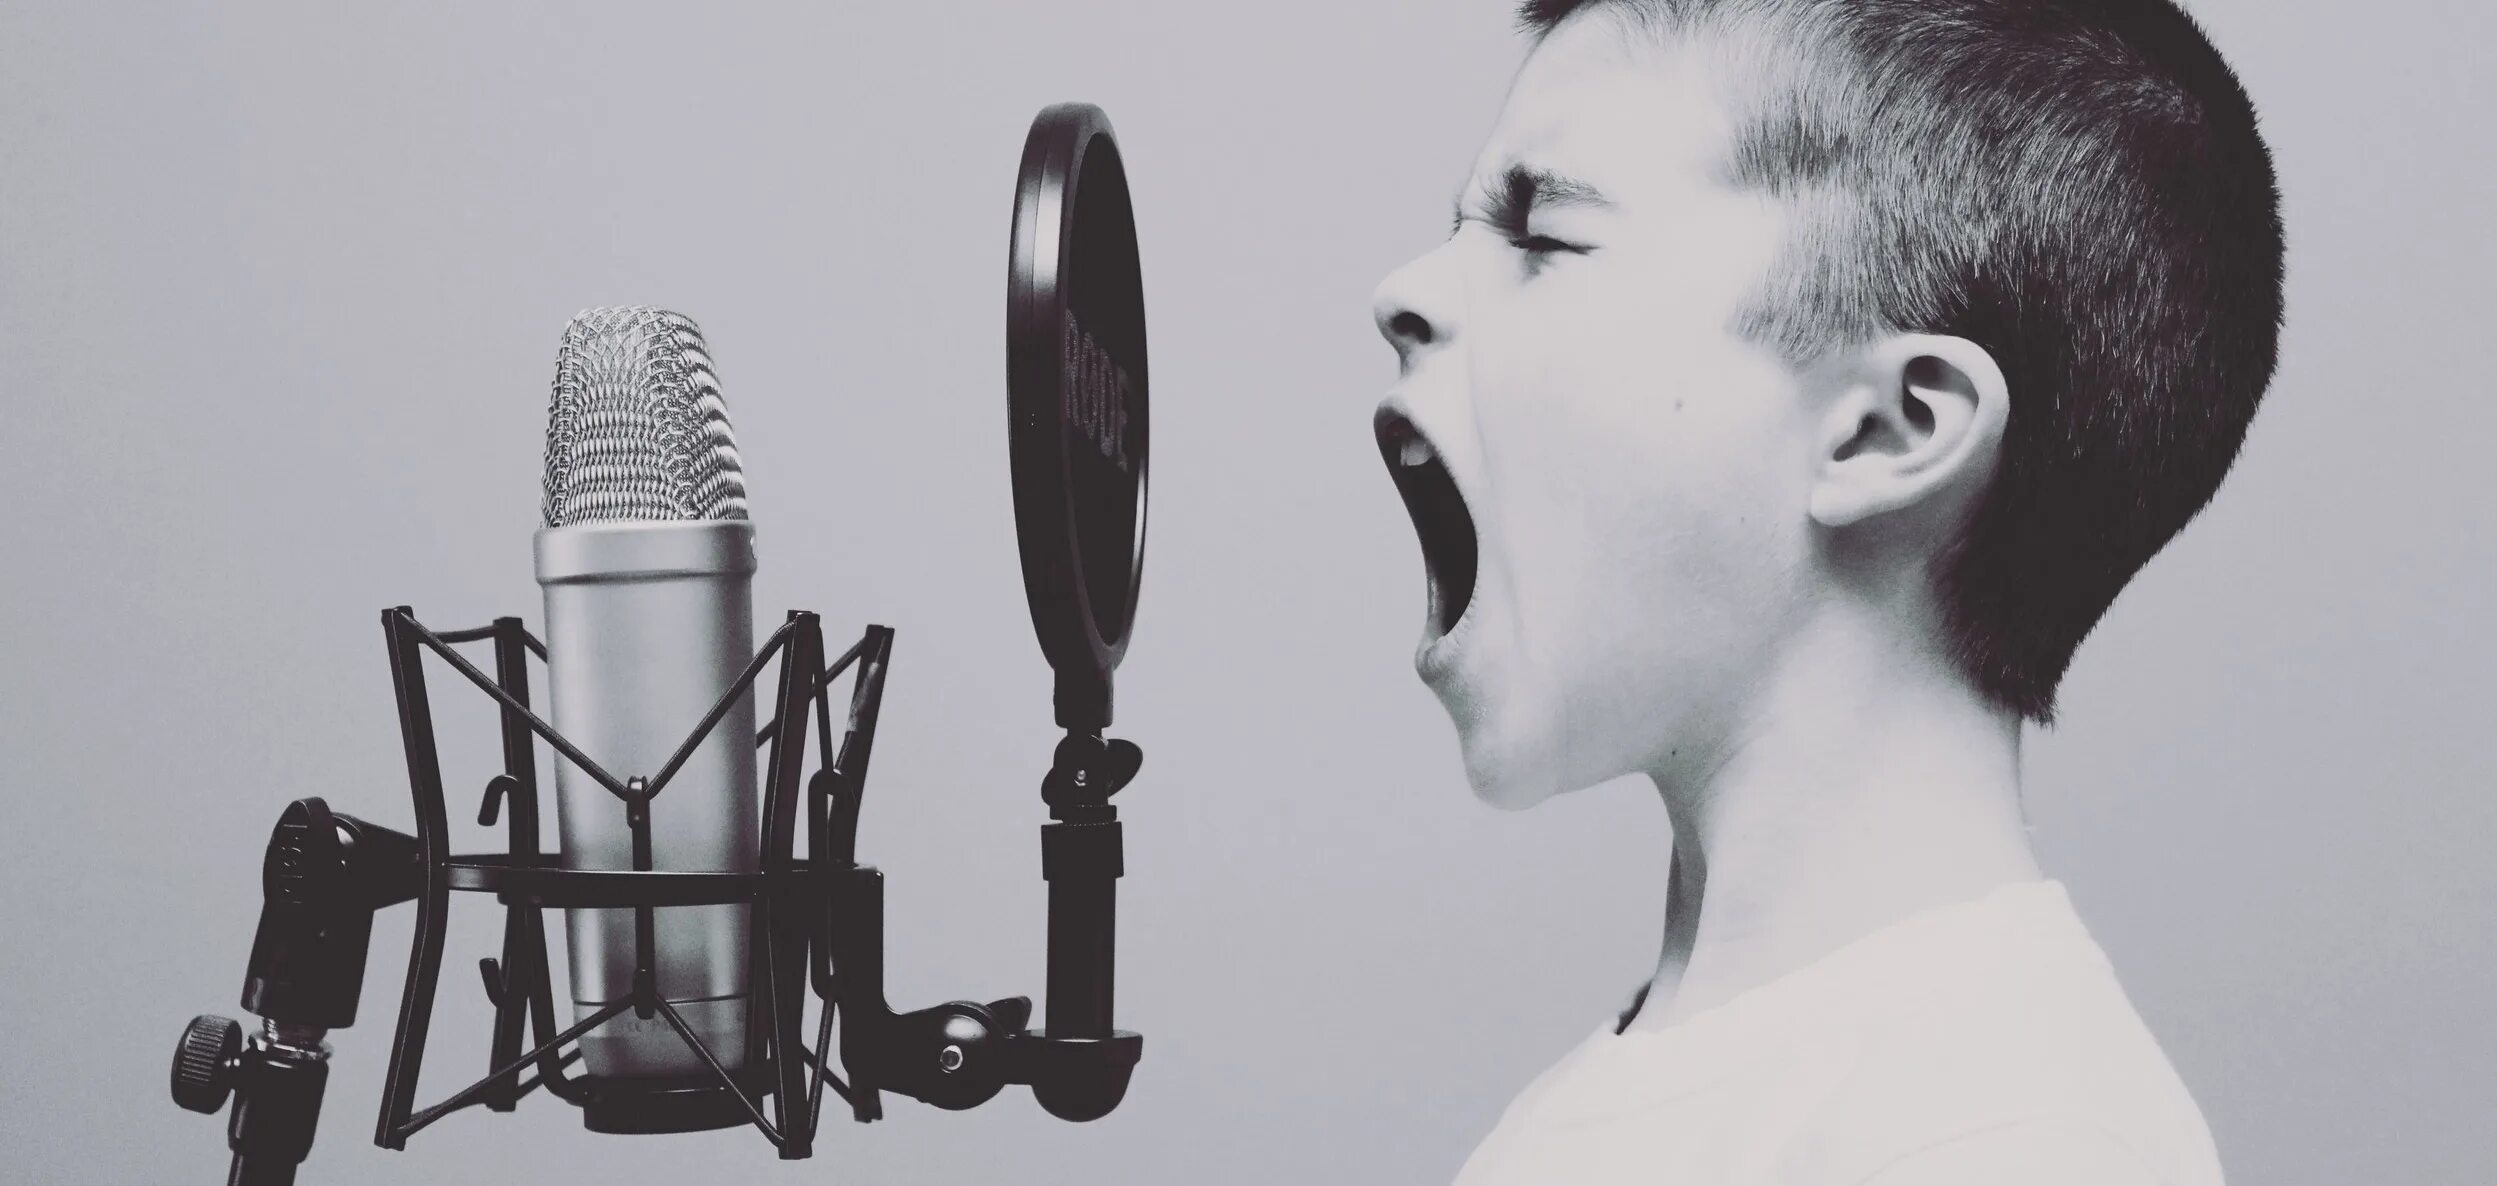 Вокализация речи. Ребенок с микрофоном. Человек перед микрофоном. Необычный голос. Человек кричит в микрофон.